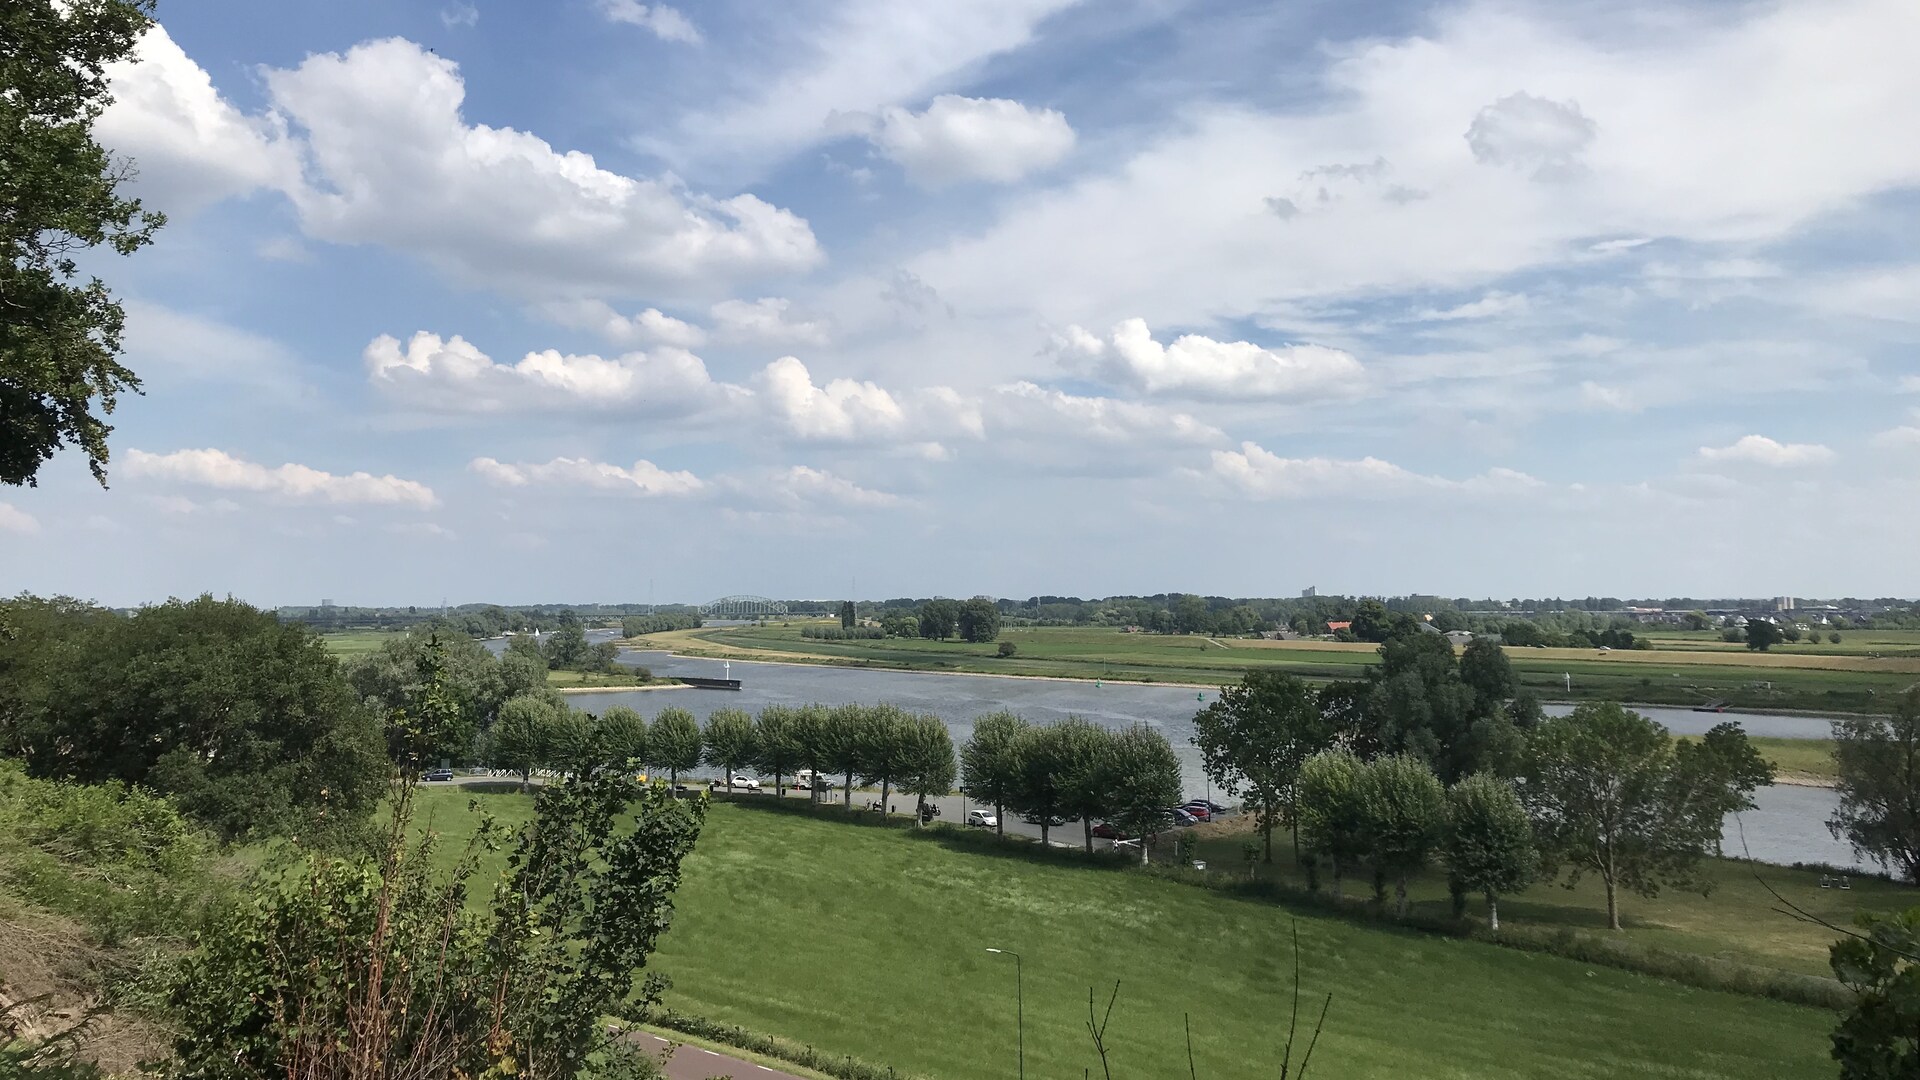 Weids uitzicht over de uiterwaarden en Rijn, met Hollandse wolkenlucht